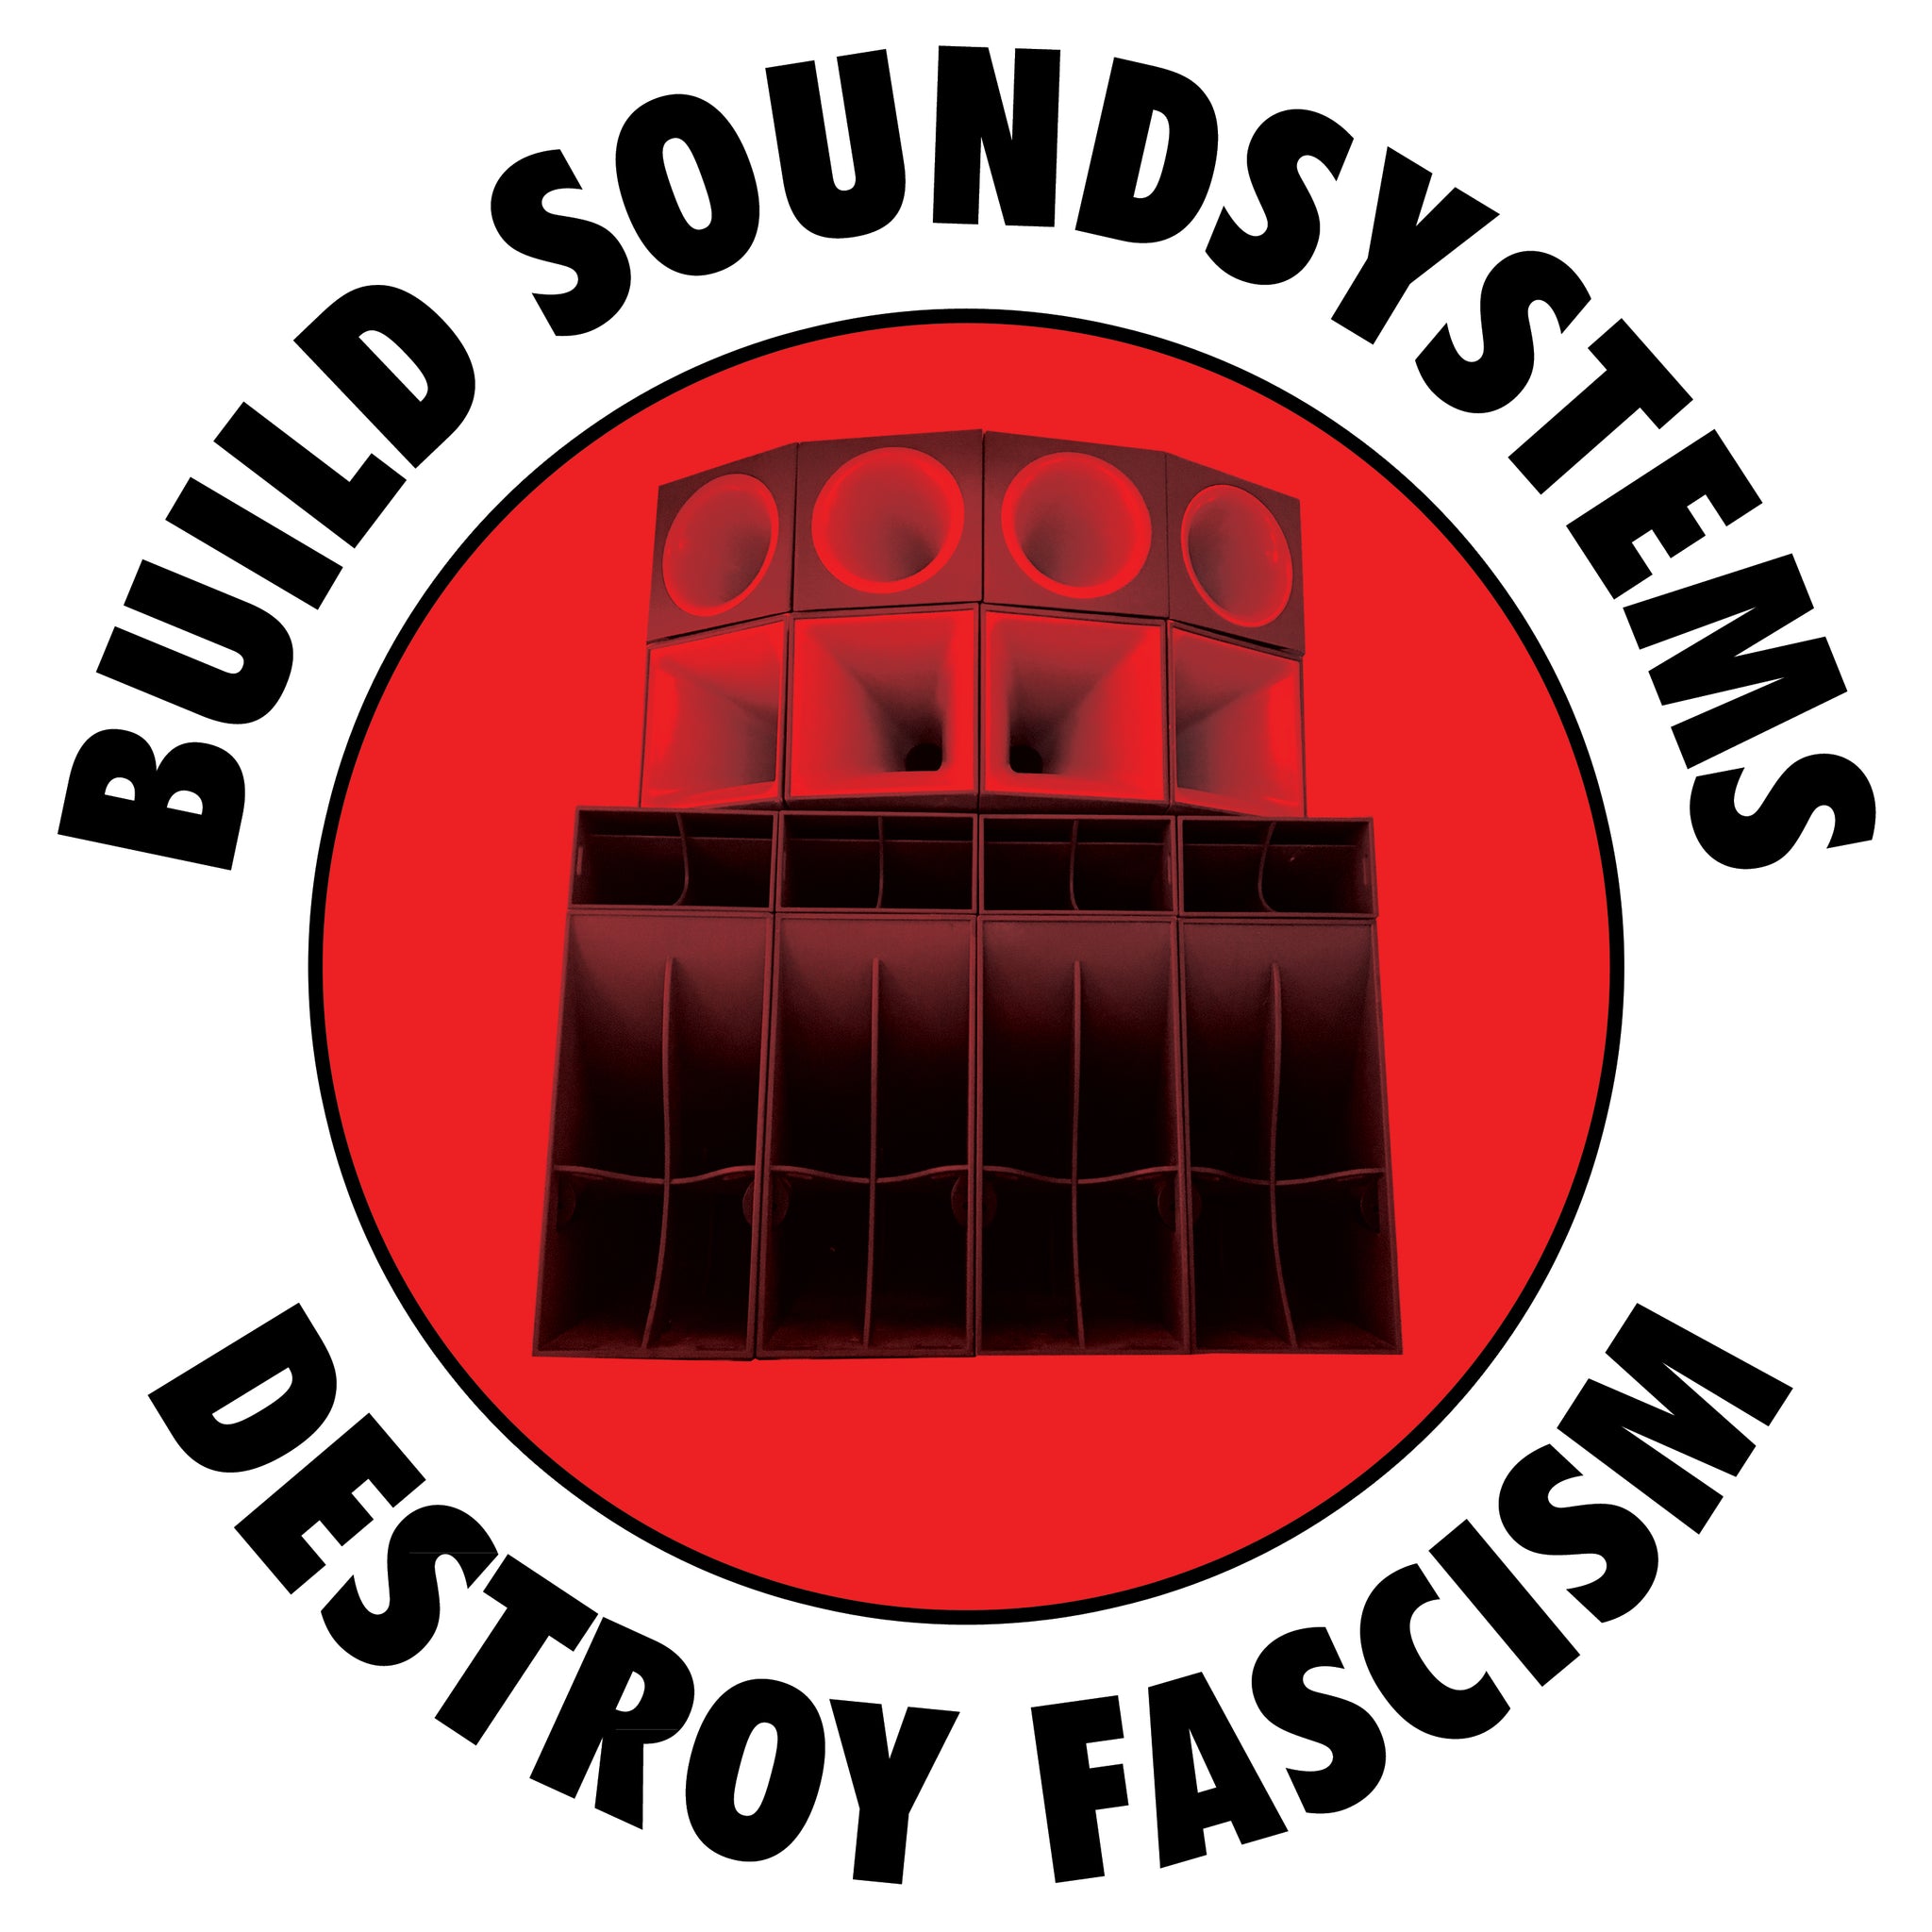 Build Soundsystem Destroy Fascism Logo